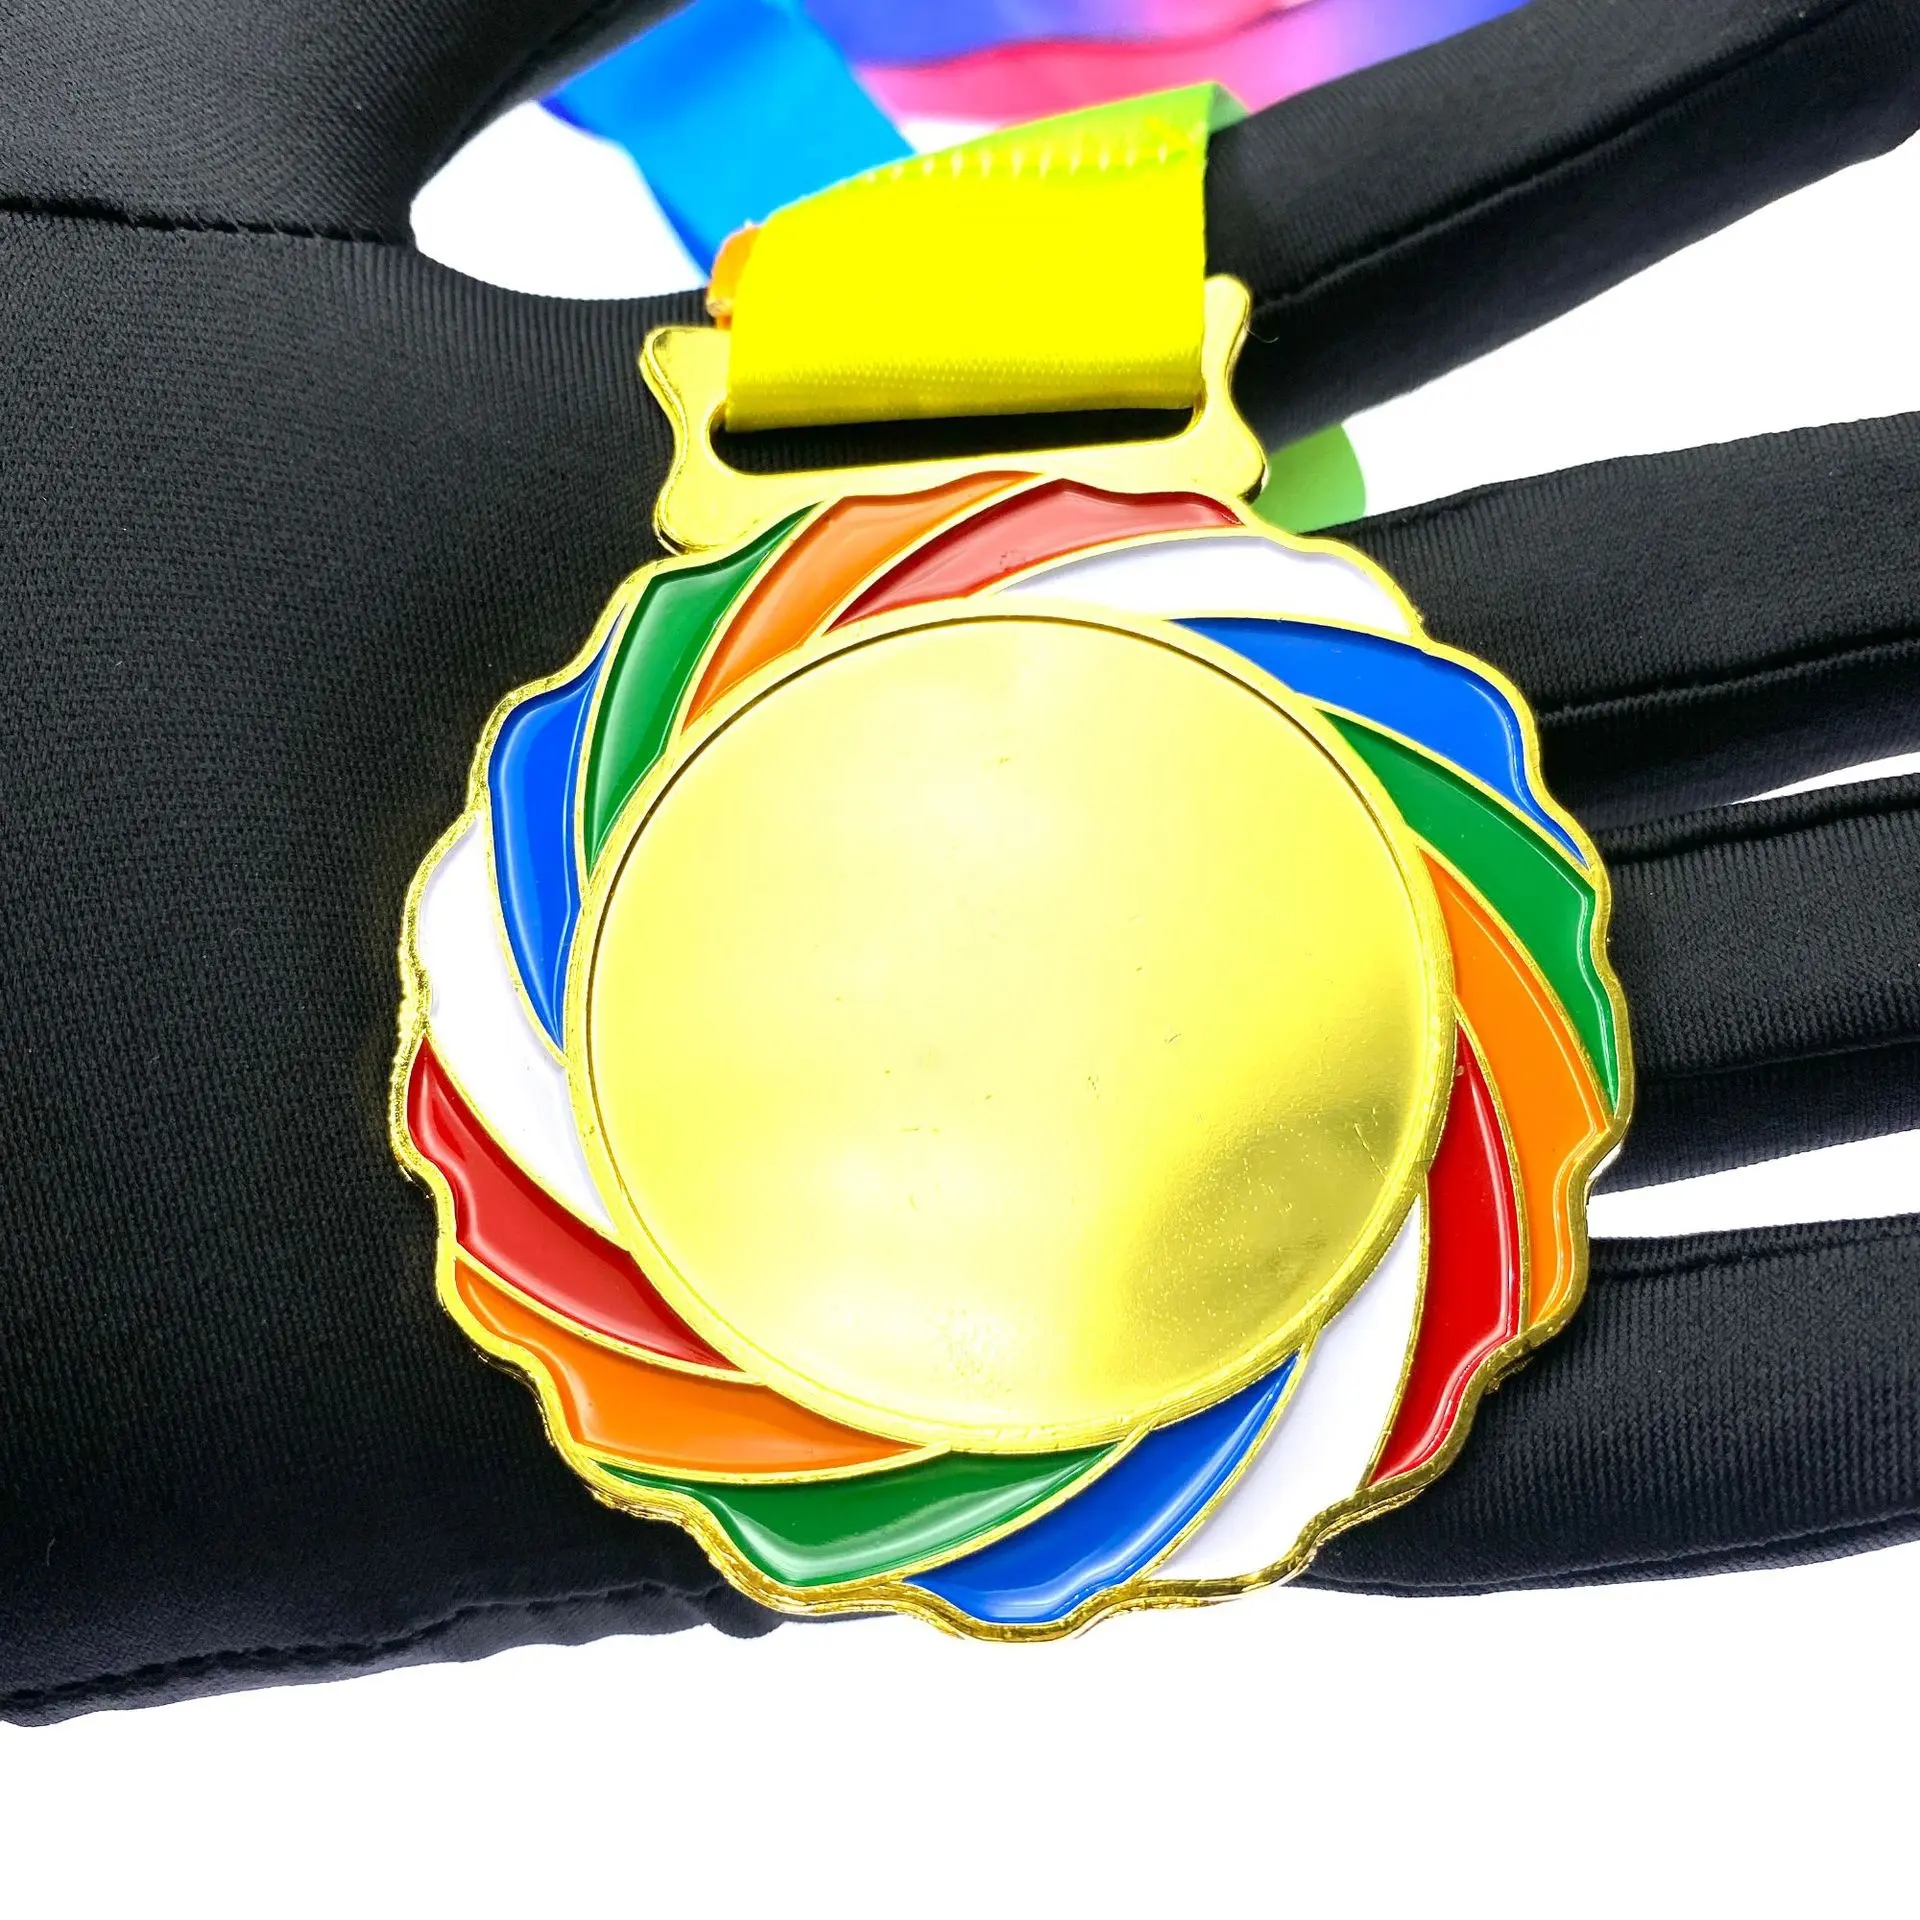 Trofeos y medallas de Taekwondo, medalla de gimnasia personalizada, medalla en blanco deportiva personalizada, cinta, juego deportivo infantil, medalla de arcoíris